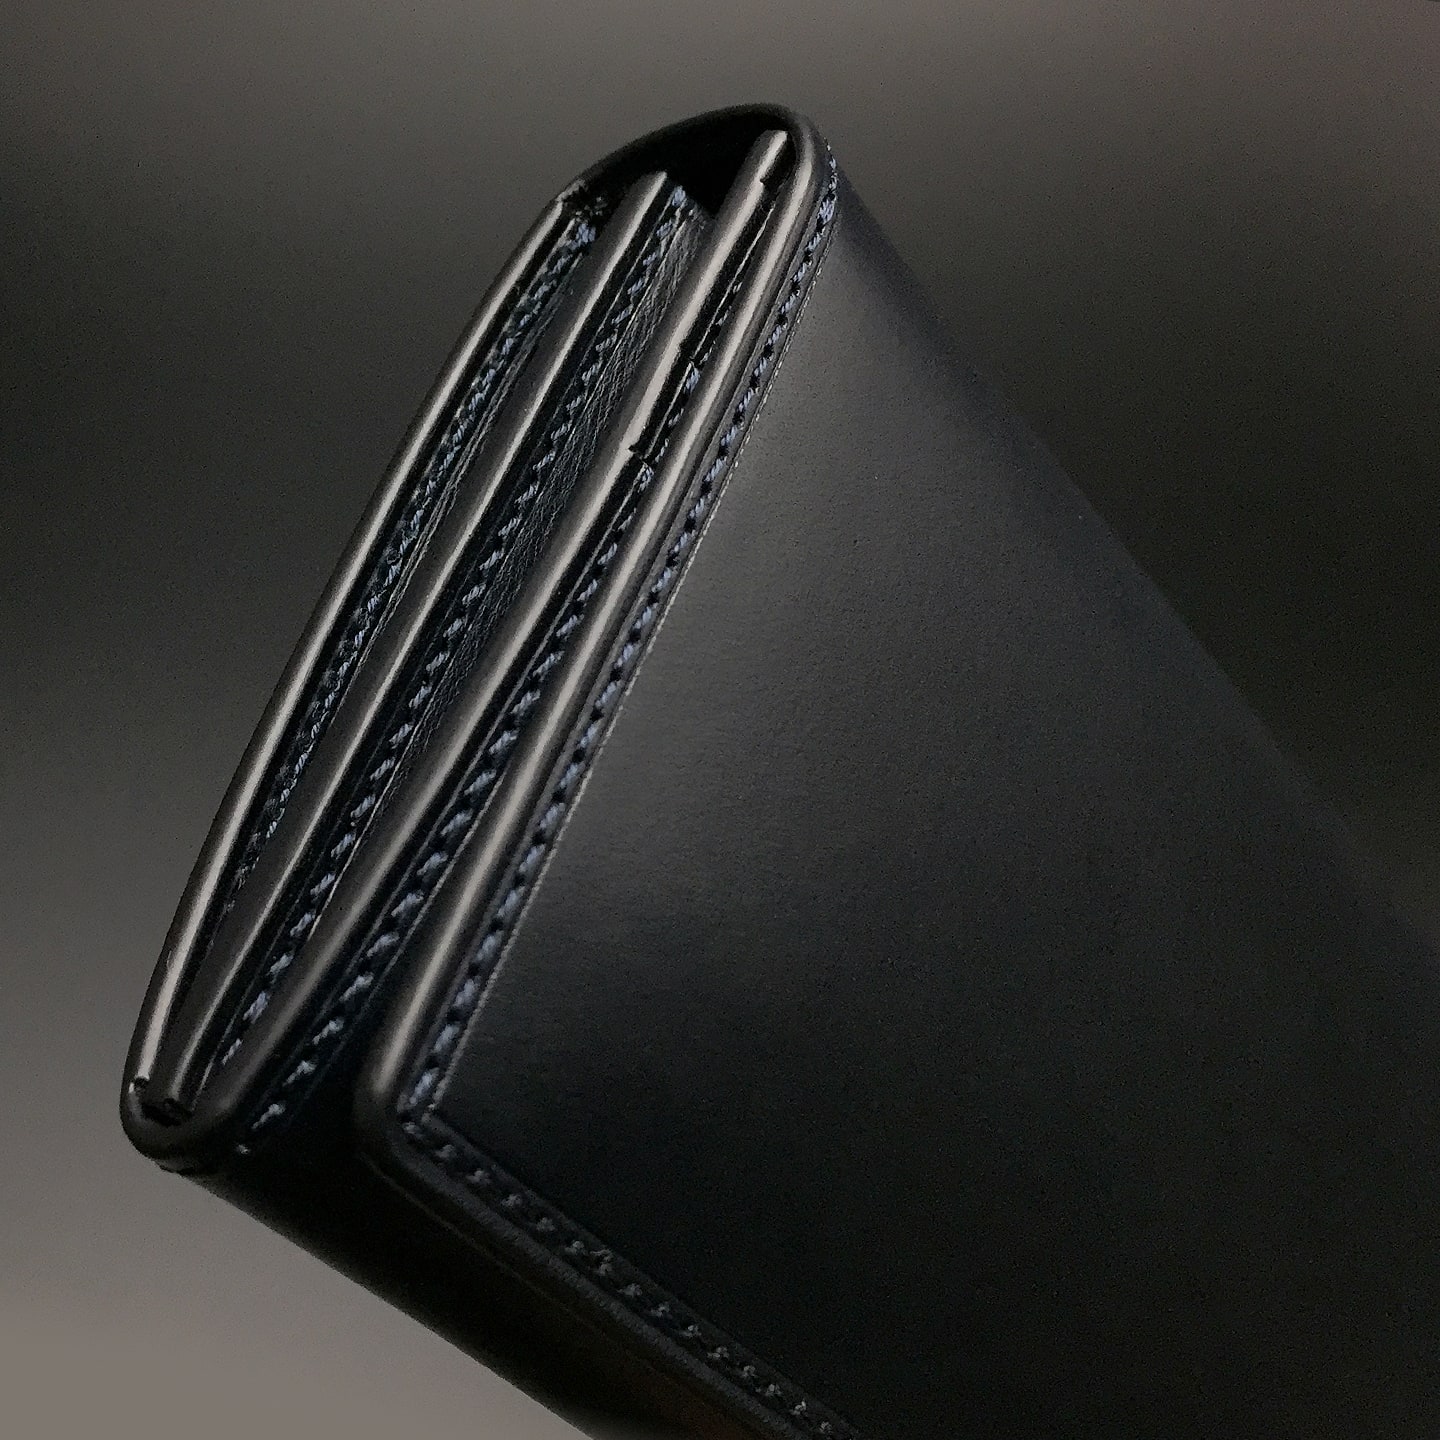 ブッテーロ 長財布 | 大人の財布・ 長財布 など拘りの日本製ブランド 